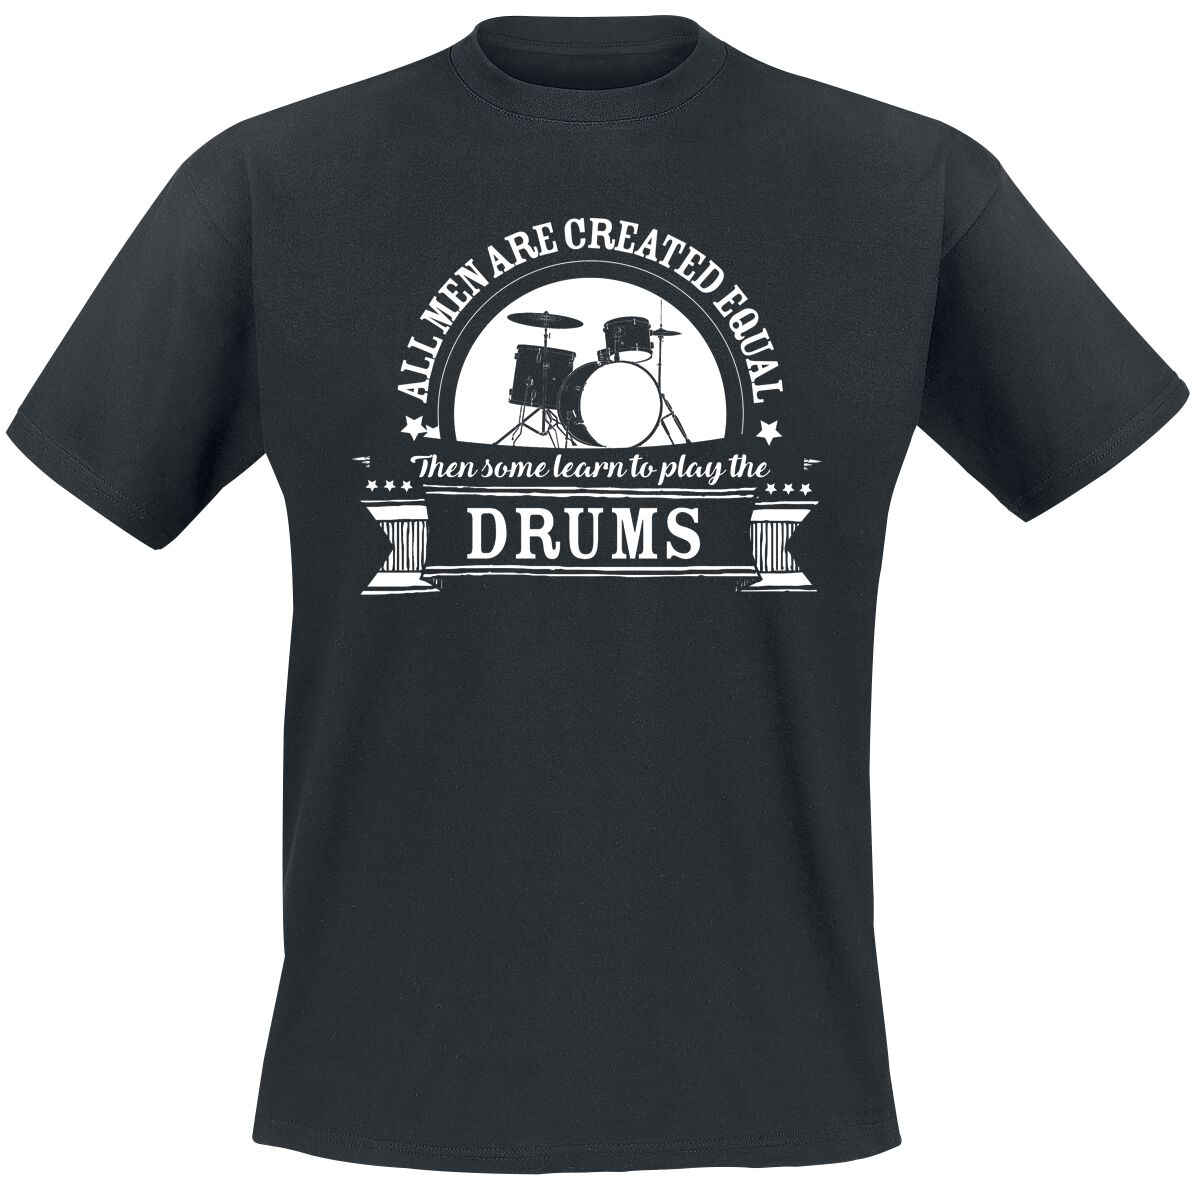 Sprüche T-Shirt - All Men Are Equal Then Some learn To Play The Drums - L bis 5XL - für Männer - Größe XL - schwarz